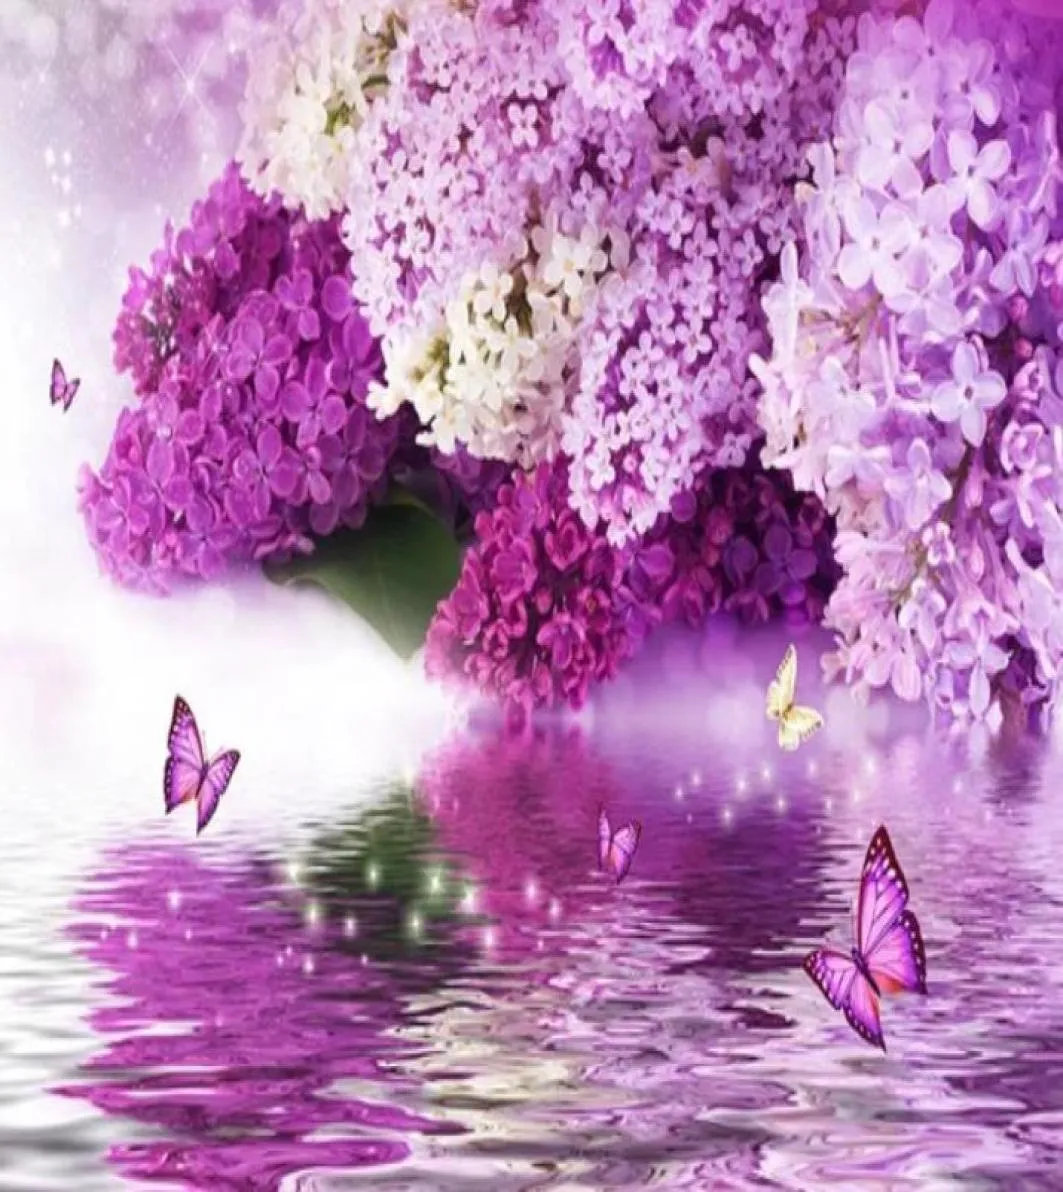 schöne Landschaft Tapeten lila Blumenhydrologie Reflexion Schmetterling Hintergrund Wall5358185